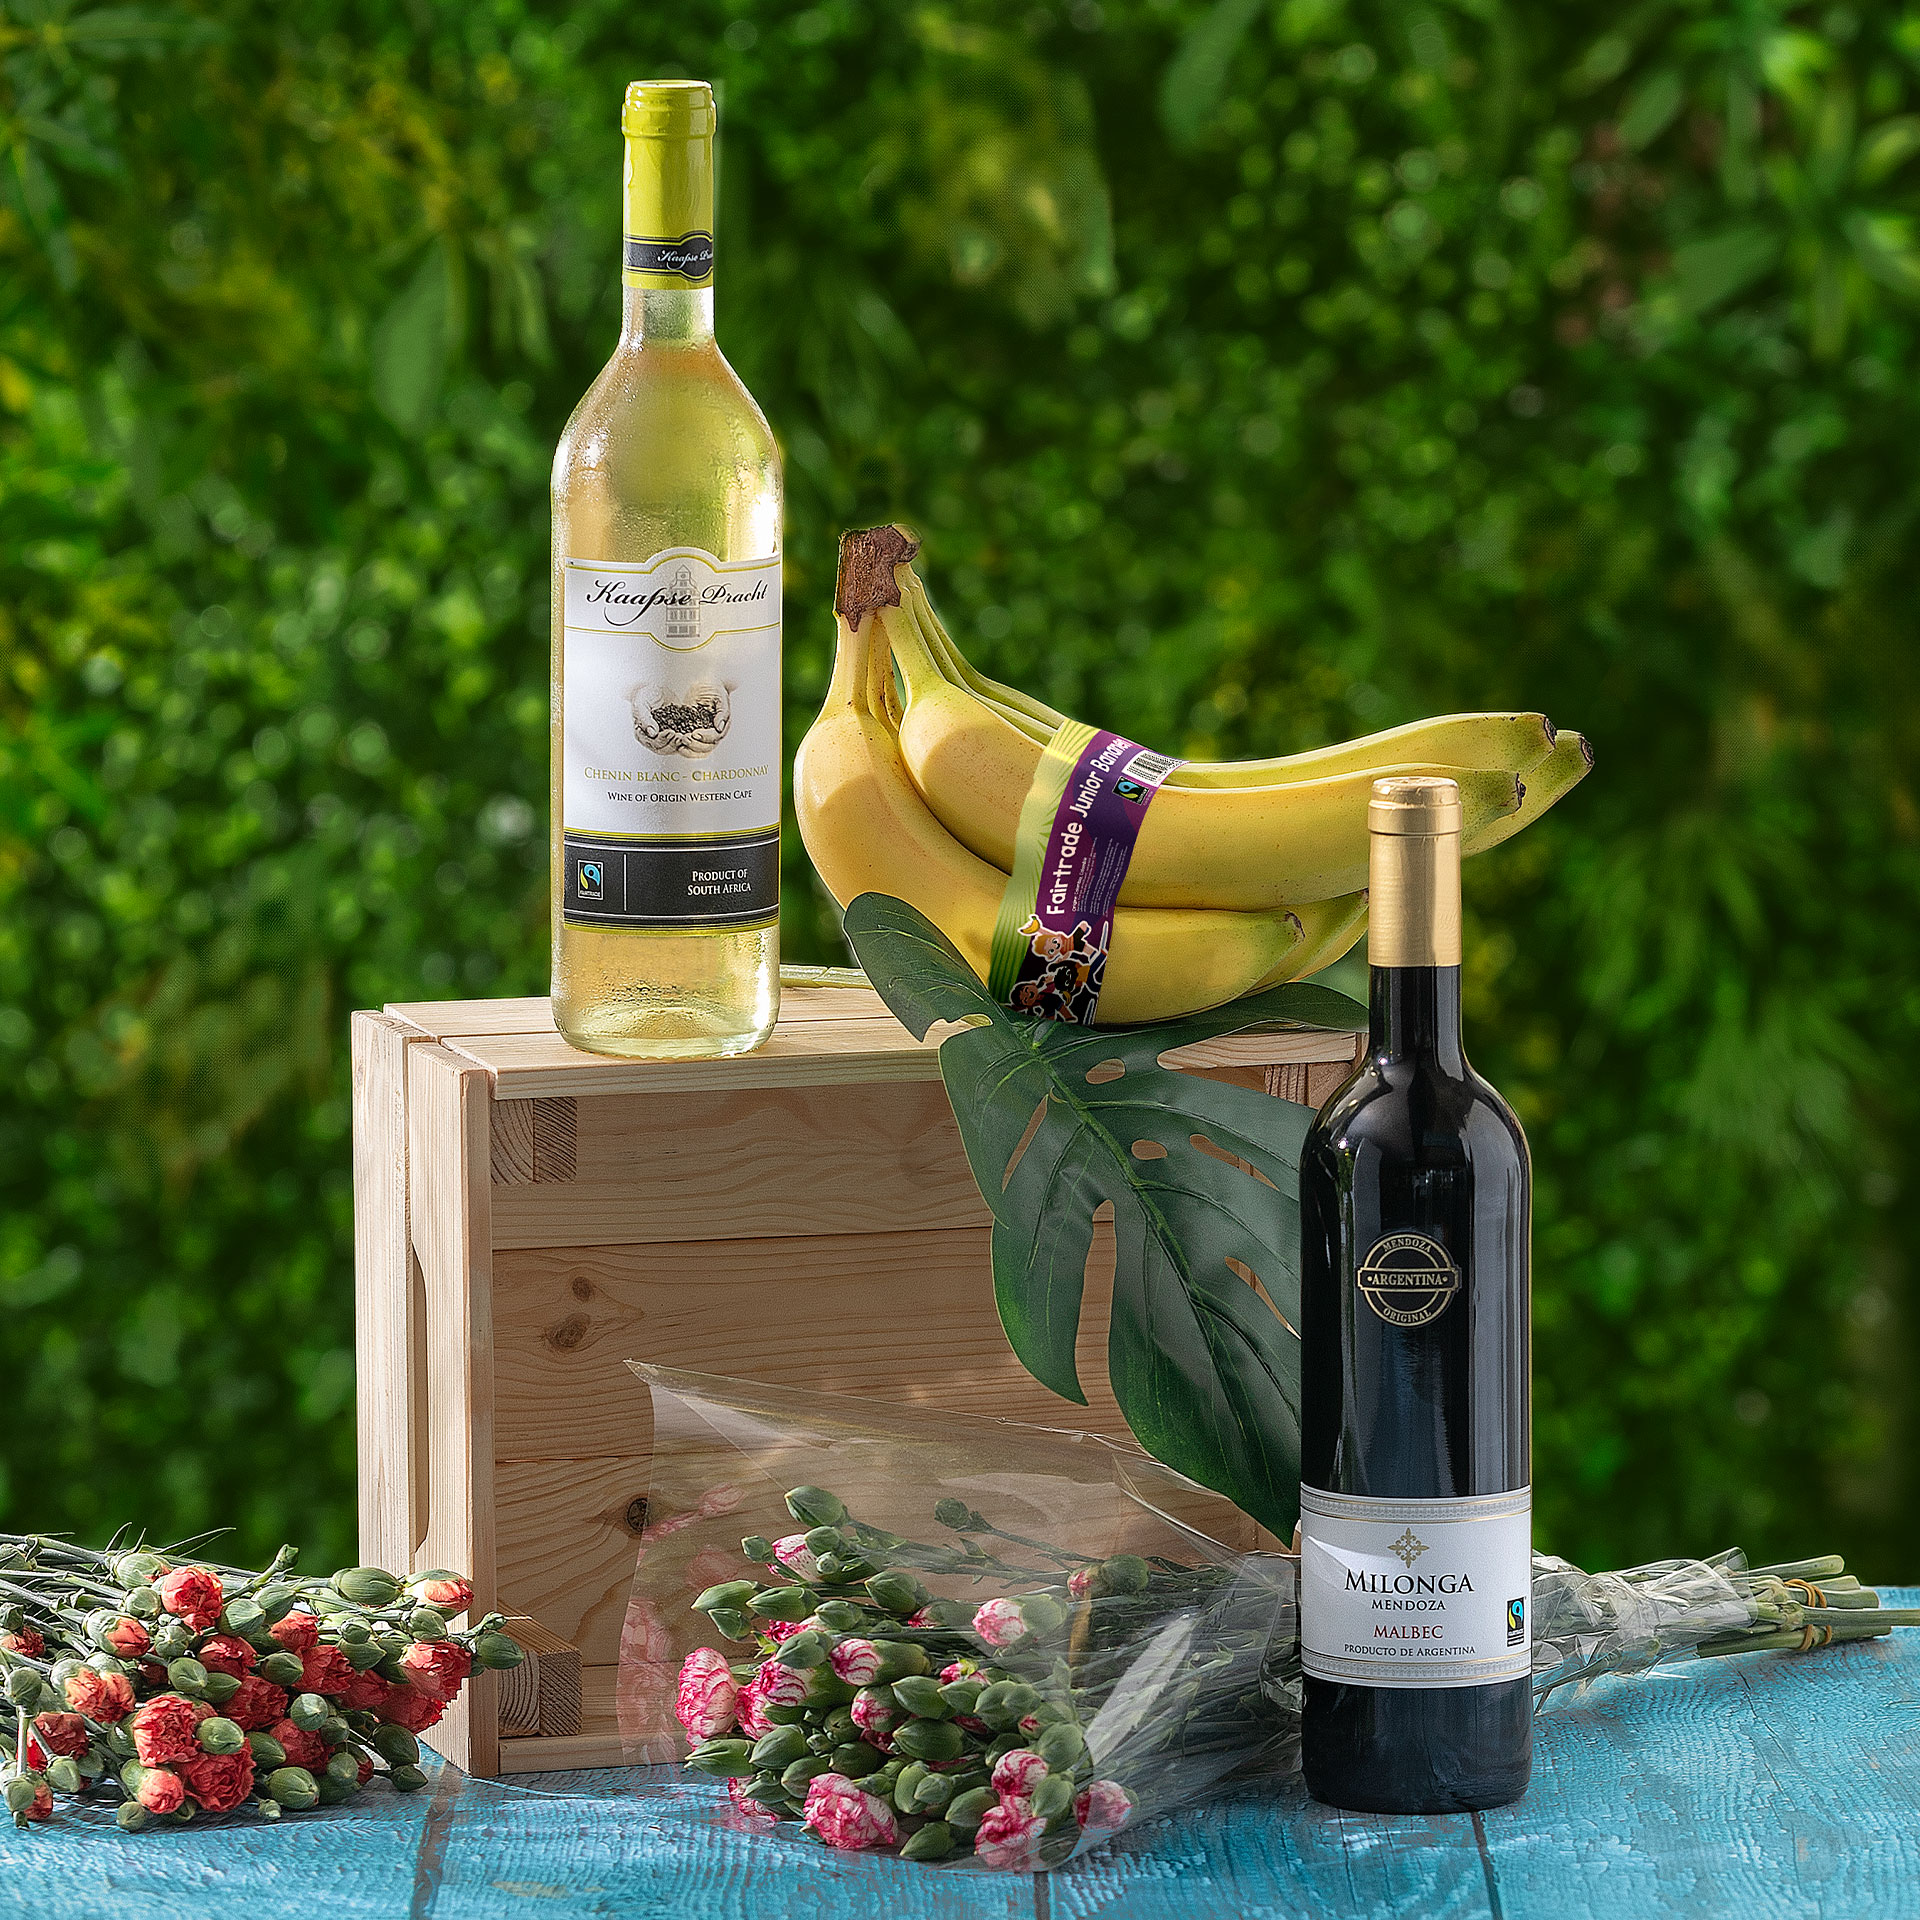 KAAPSE PRACHT® Fairtrade-Wein Chardonnay-Chenin blanc günstig ALDI bei